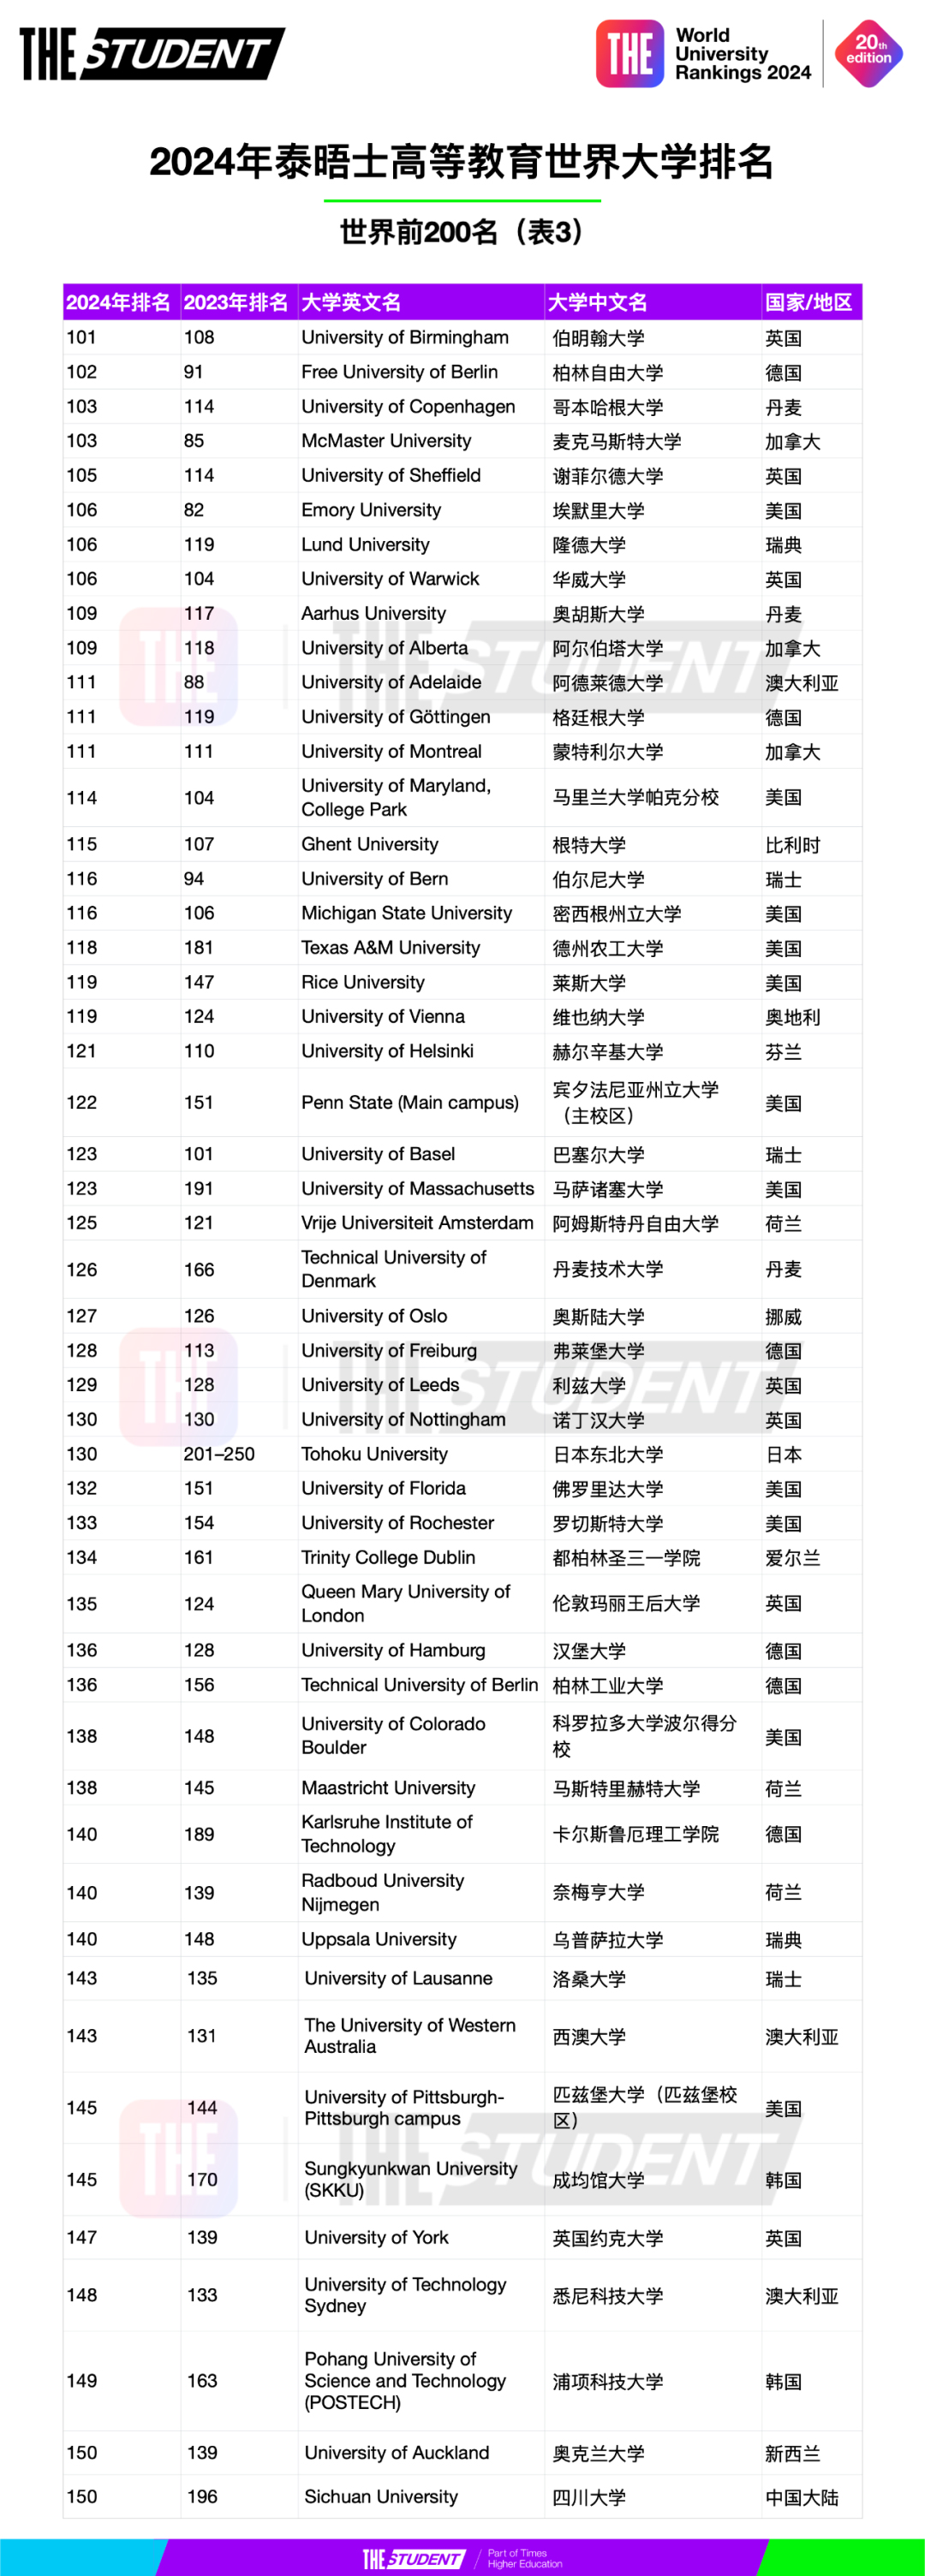 2024年泰晤士高等教育世界大学排名 (3).jpg